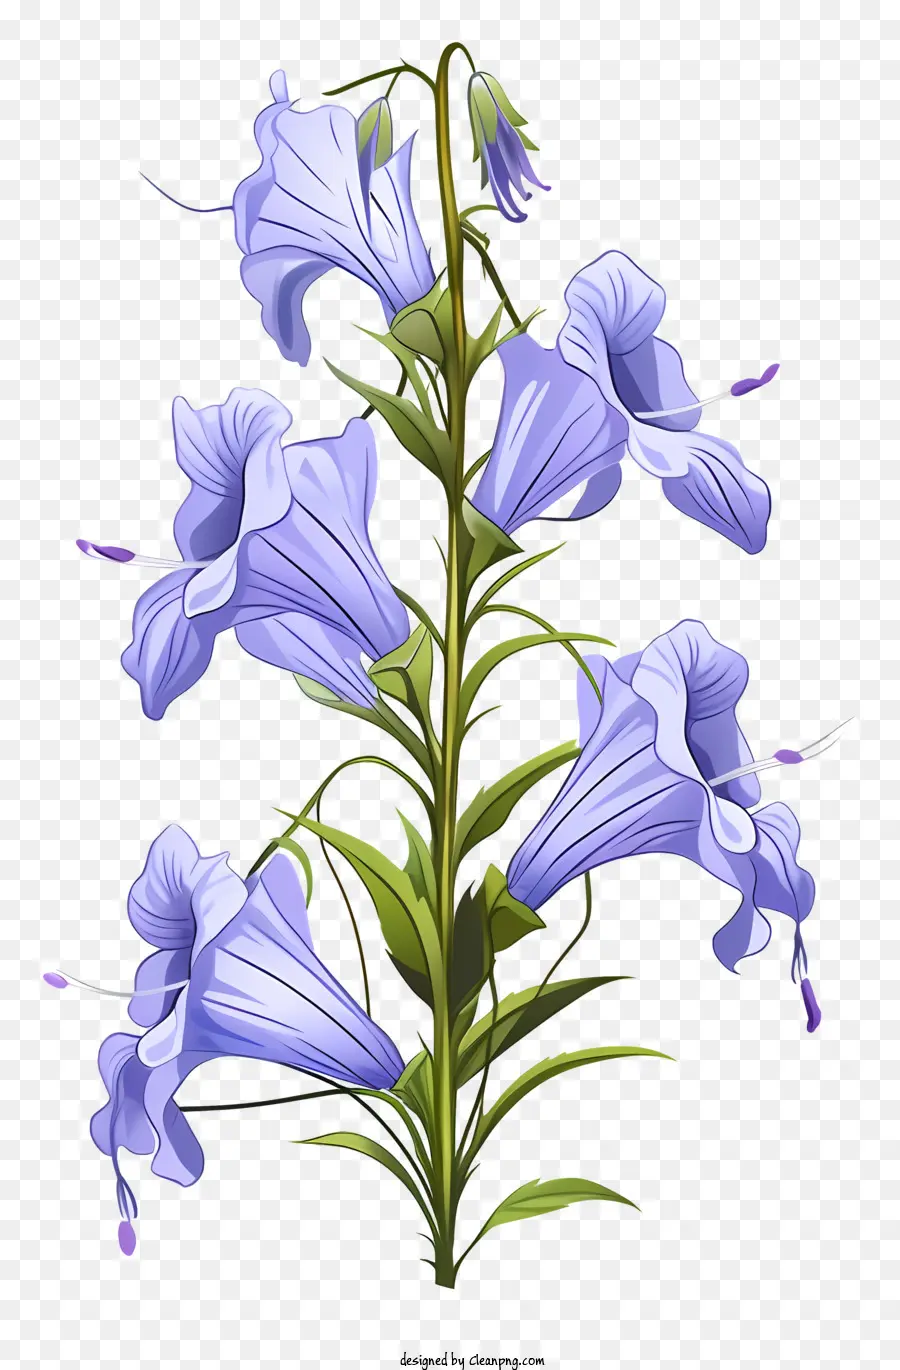 bluebell wildblumenblume blau blätter dunkelgrüne blätterblätter - Realistisches Bild von Bluebellblume mit blauen Blütenblättern